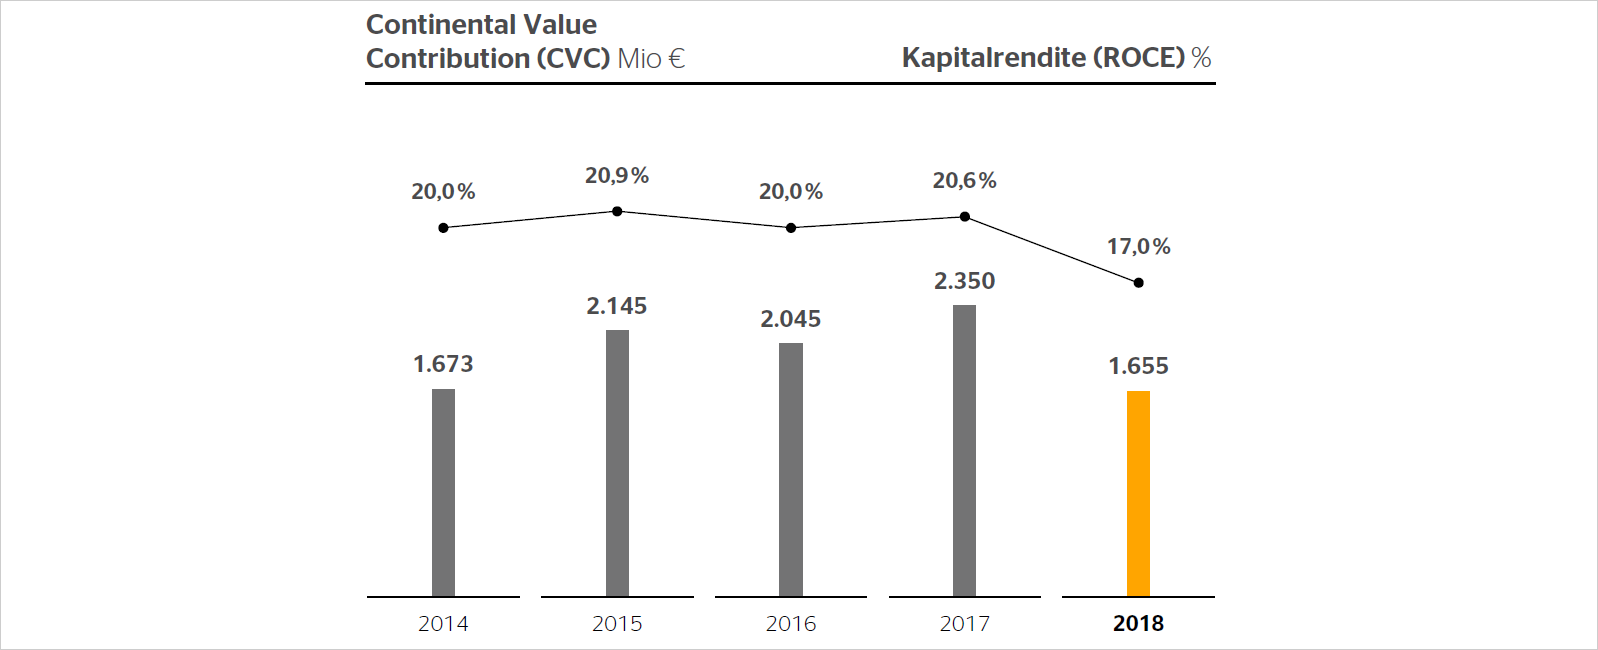 Continental Value Contribution (CVC) in Mio € / Kapitalrendite (ROCE) in %